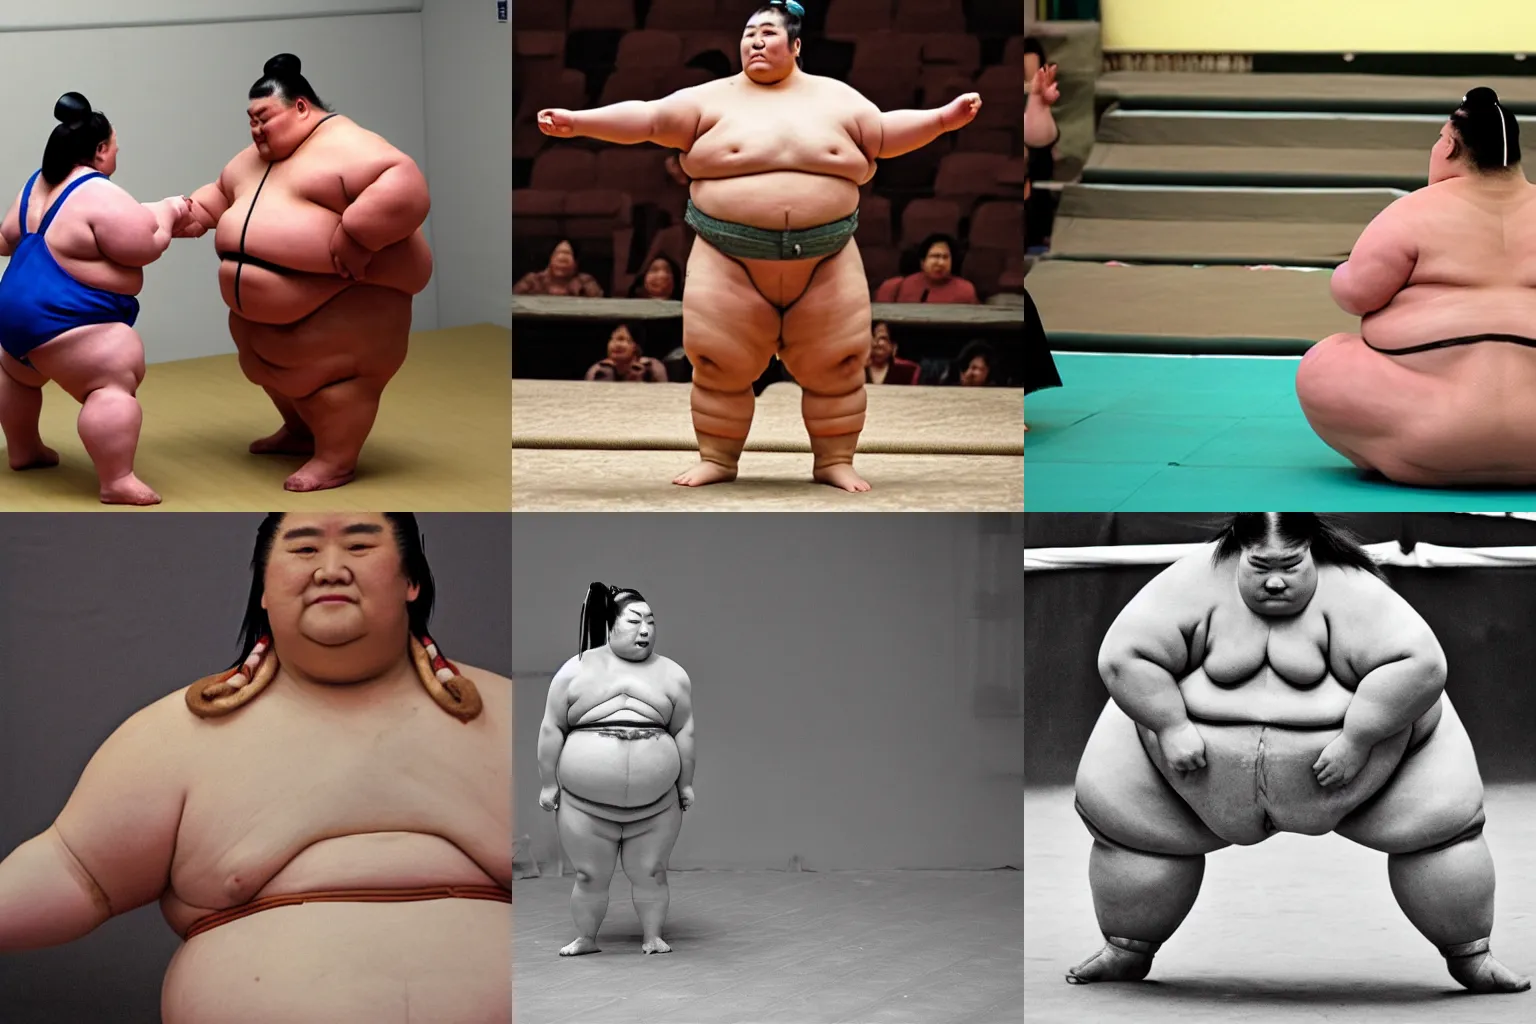 Prompt: female sumo wrestler